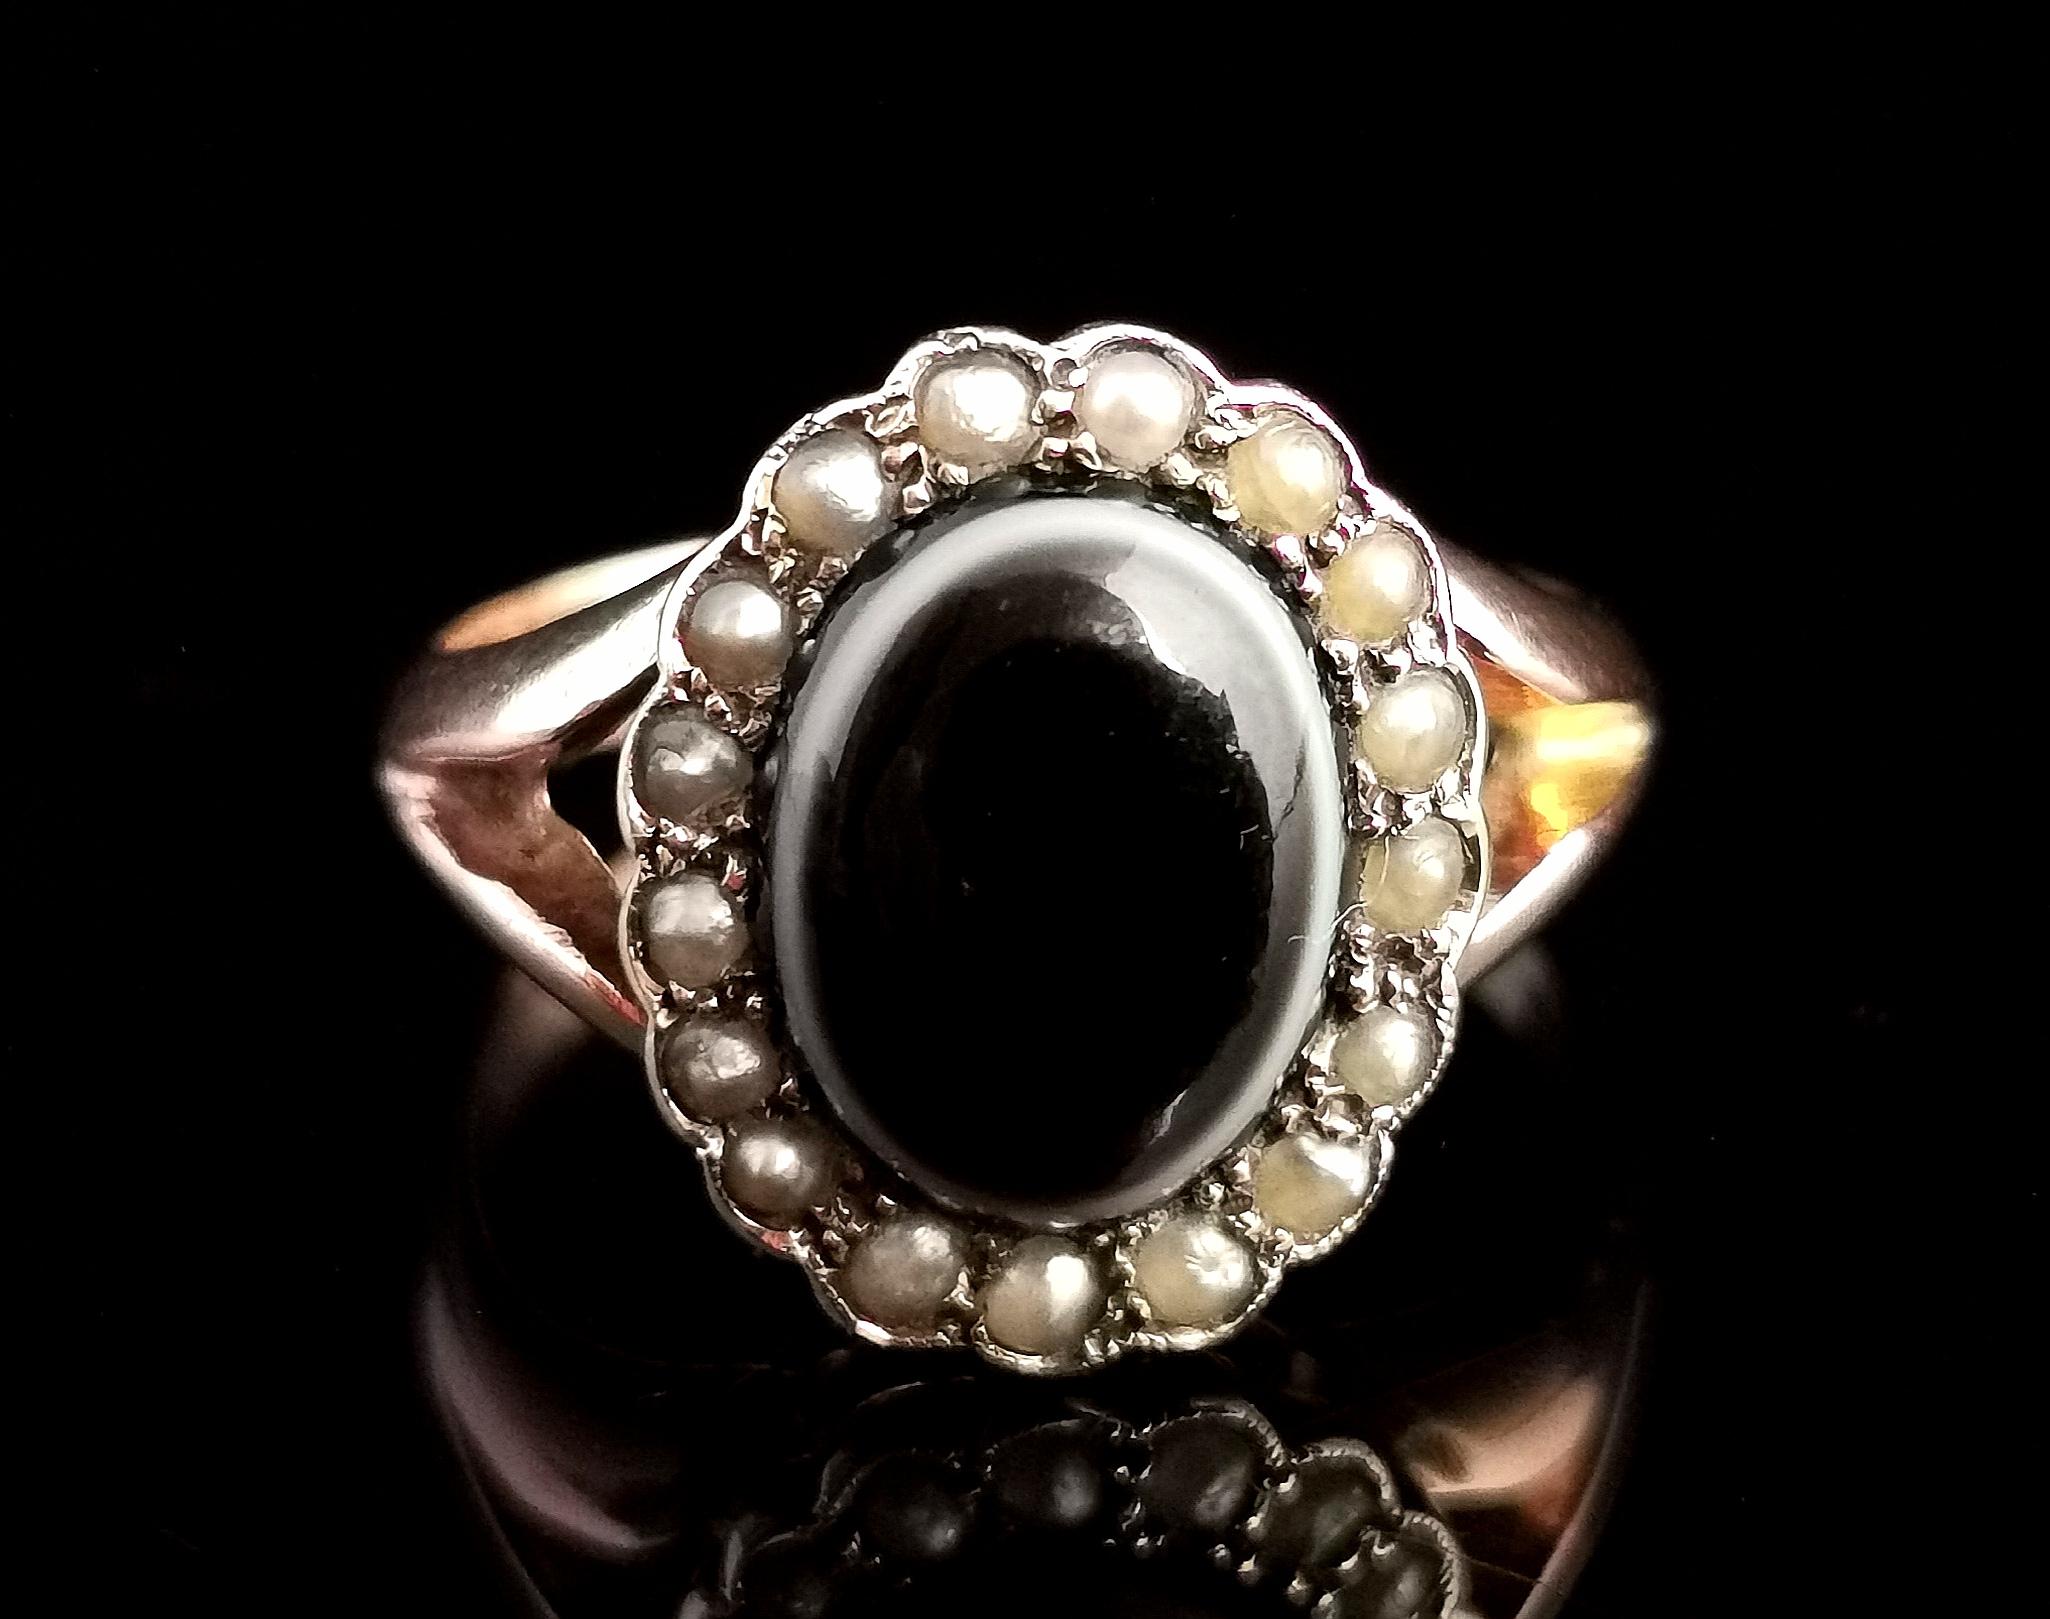 Eine schöne antike frühen Art Deco-Ära trauernden Ring

In der Mitte befindet sich ein ovaler Achat-Cabochon in Schwarz mit weißer und brauner Bänderung, umgeben von einem Kranz aus cremefarbenen Saatperlen.

Er hat ein klobiges, glatt poliertes